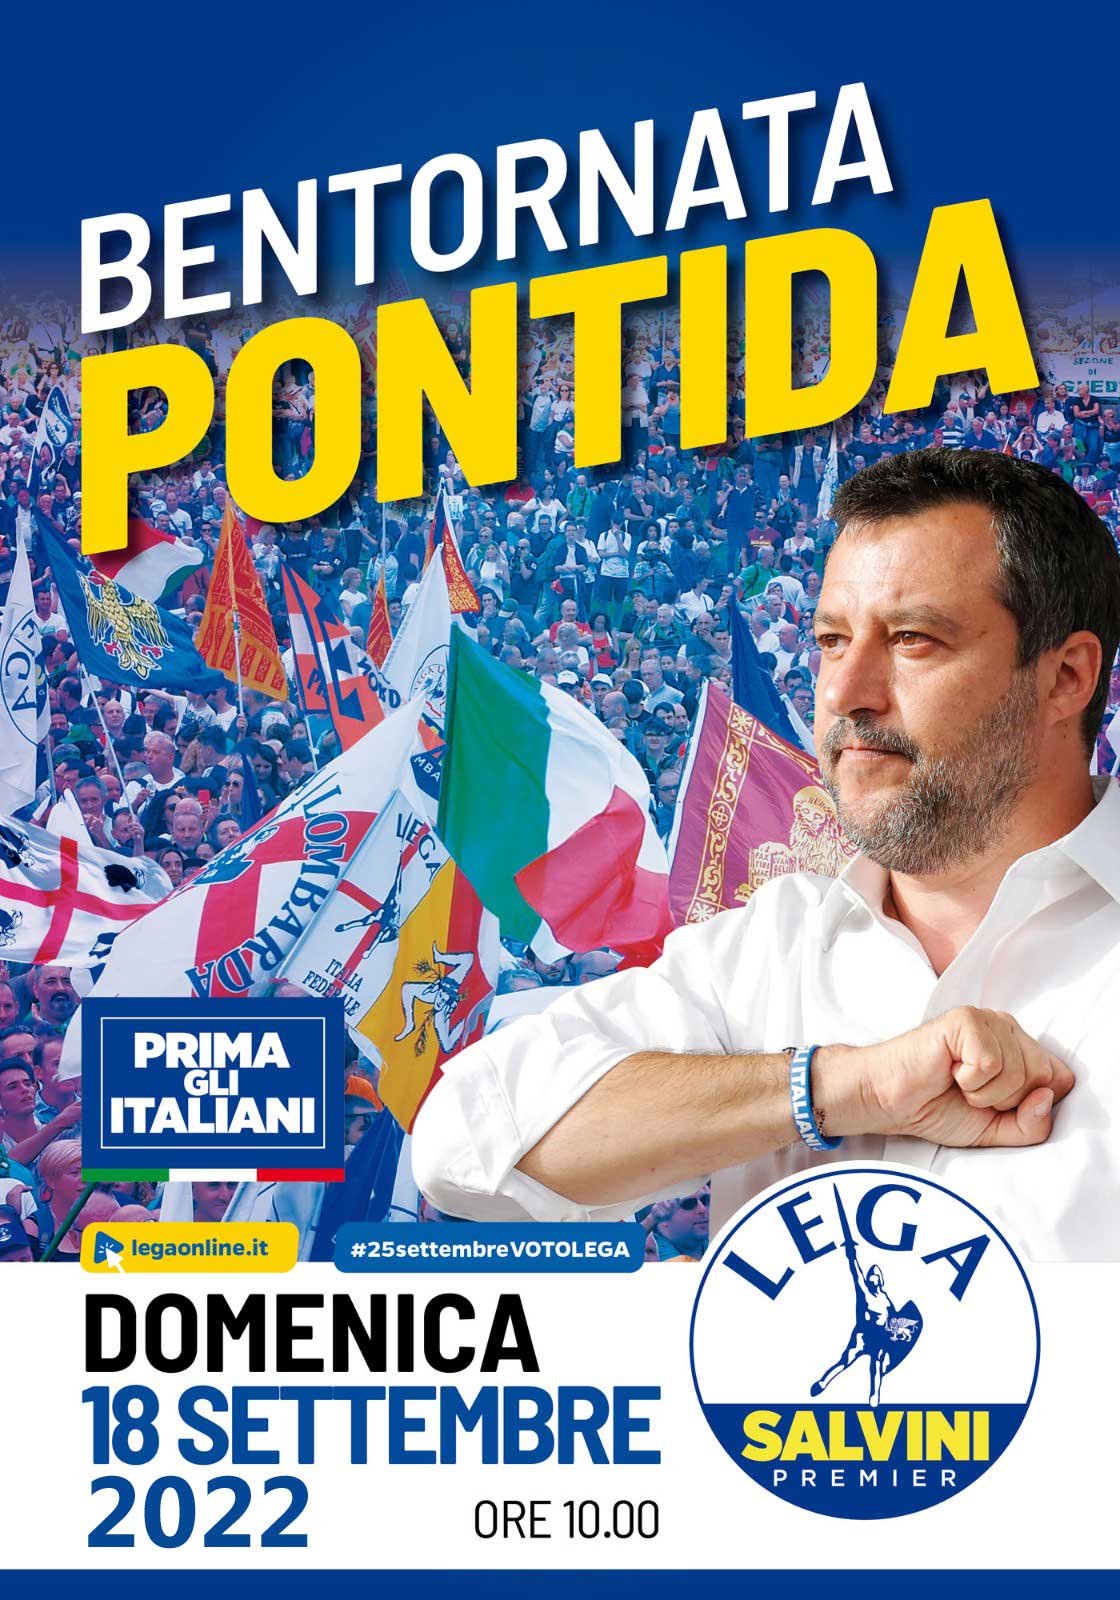 LEGA Salvini Premier - Pontida 2022